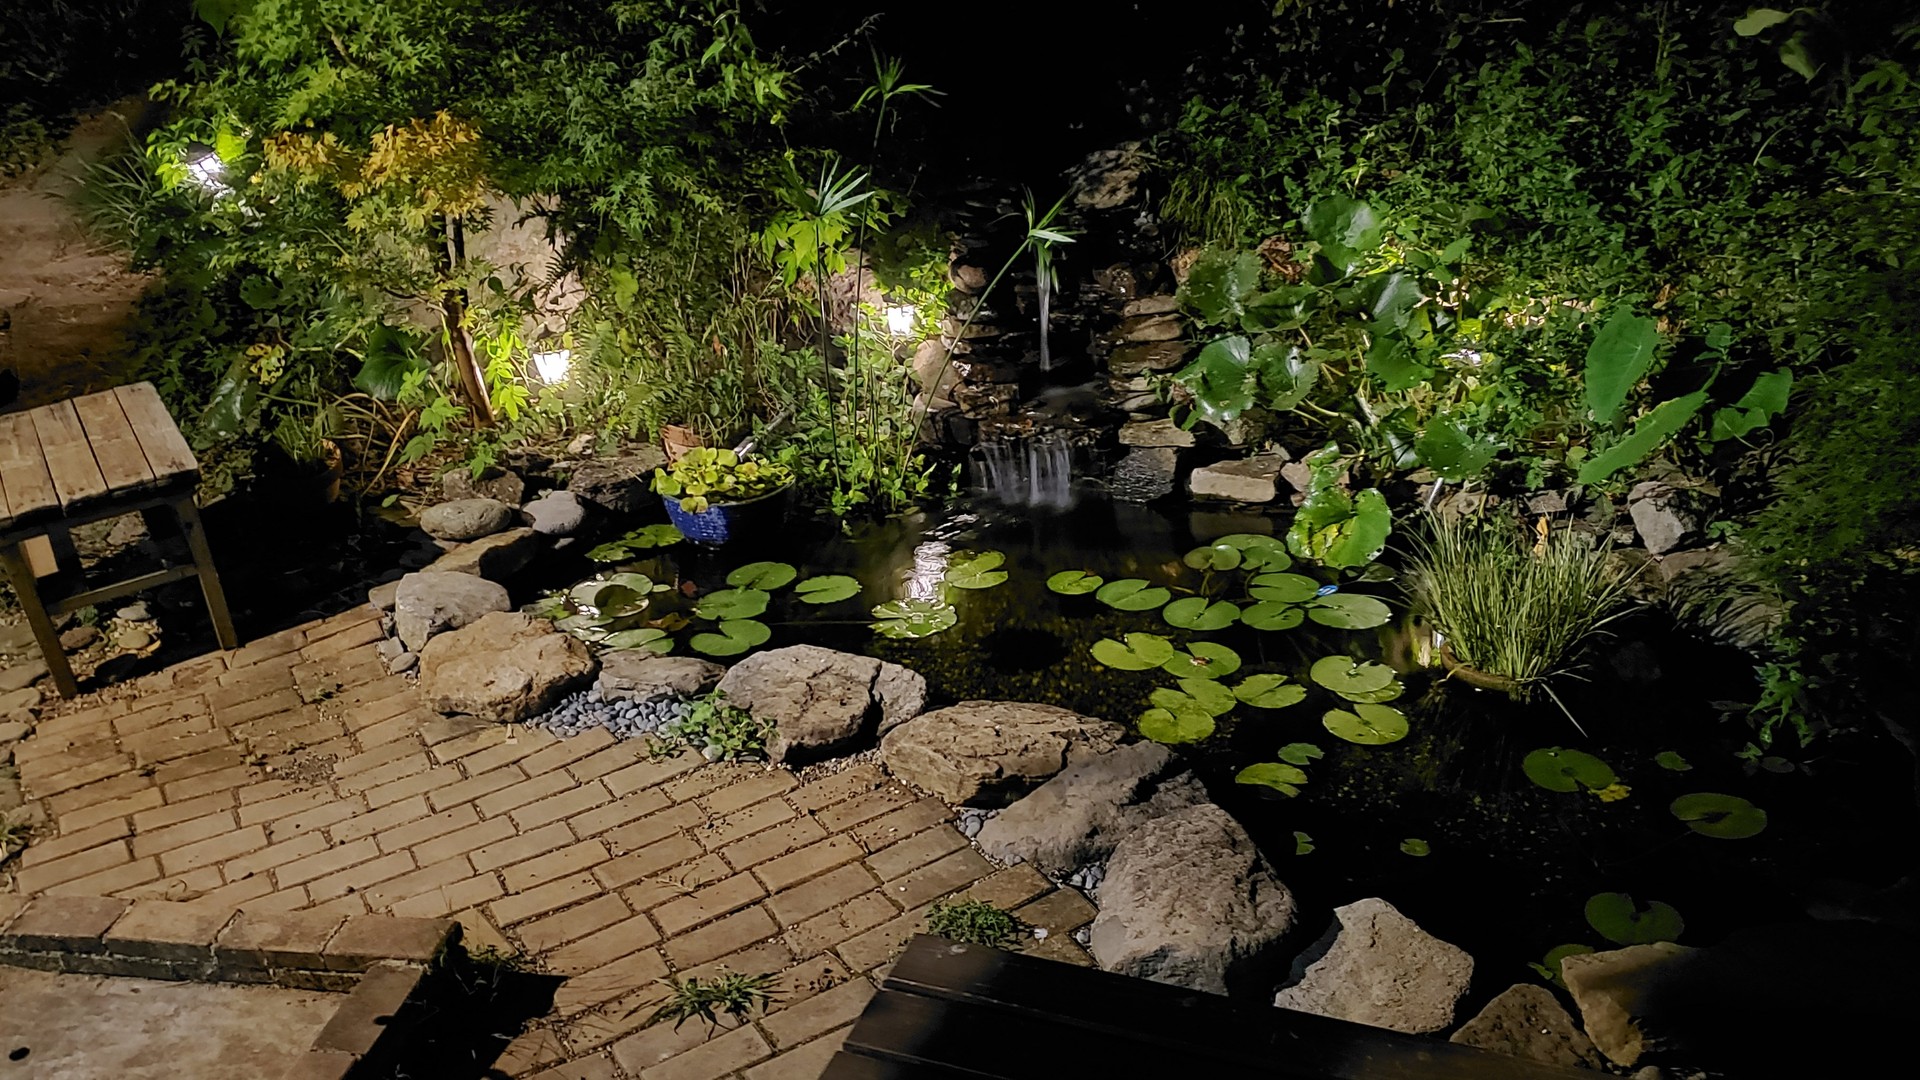 池のライトアップ 夜のビオトープ 庭池日記